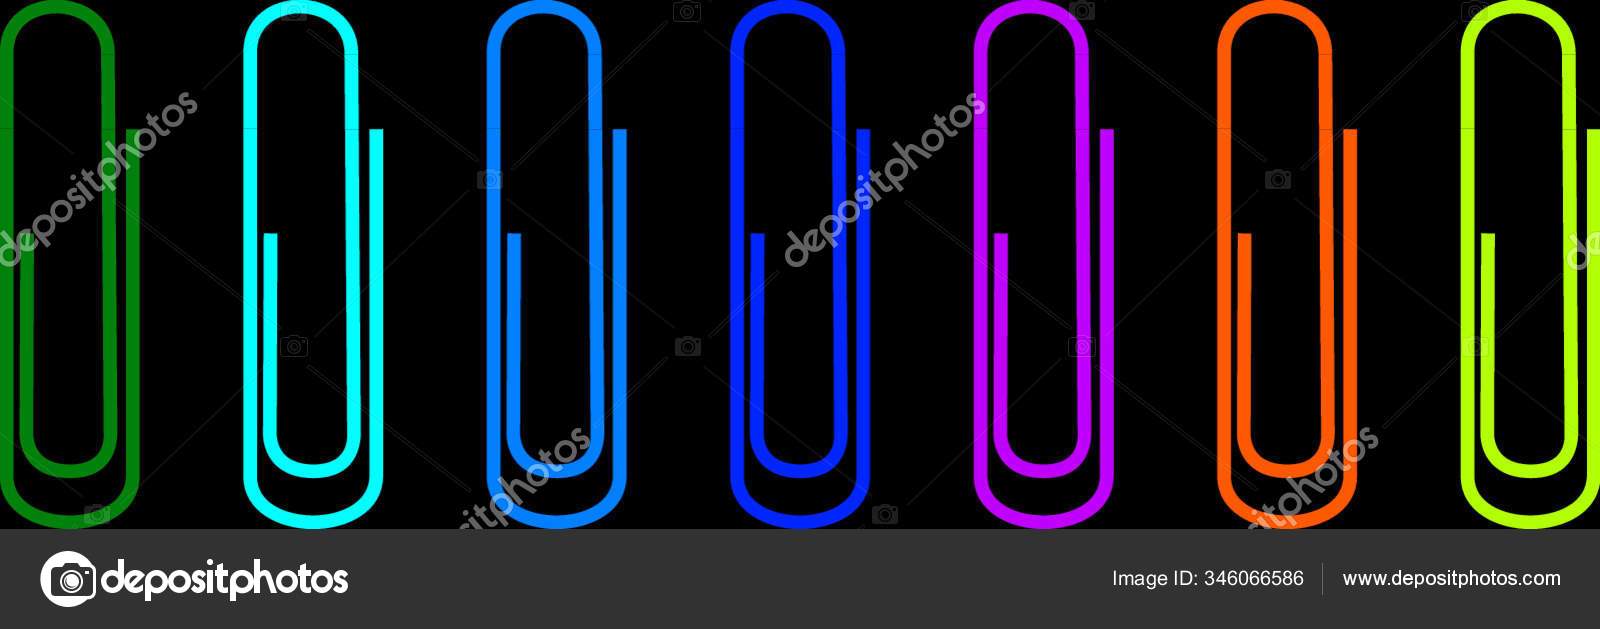 異なる虹色の7つのカラフルな紙クリップのベクトルイラスト ストックベクター C Yayimages